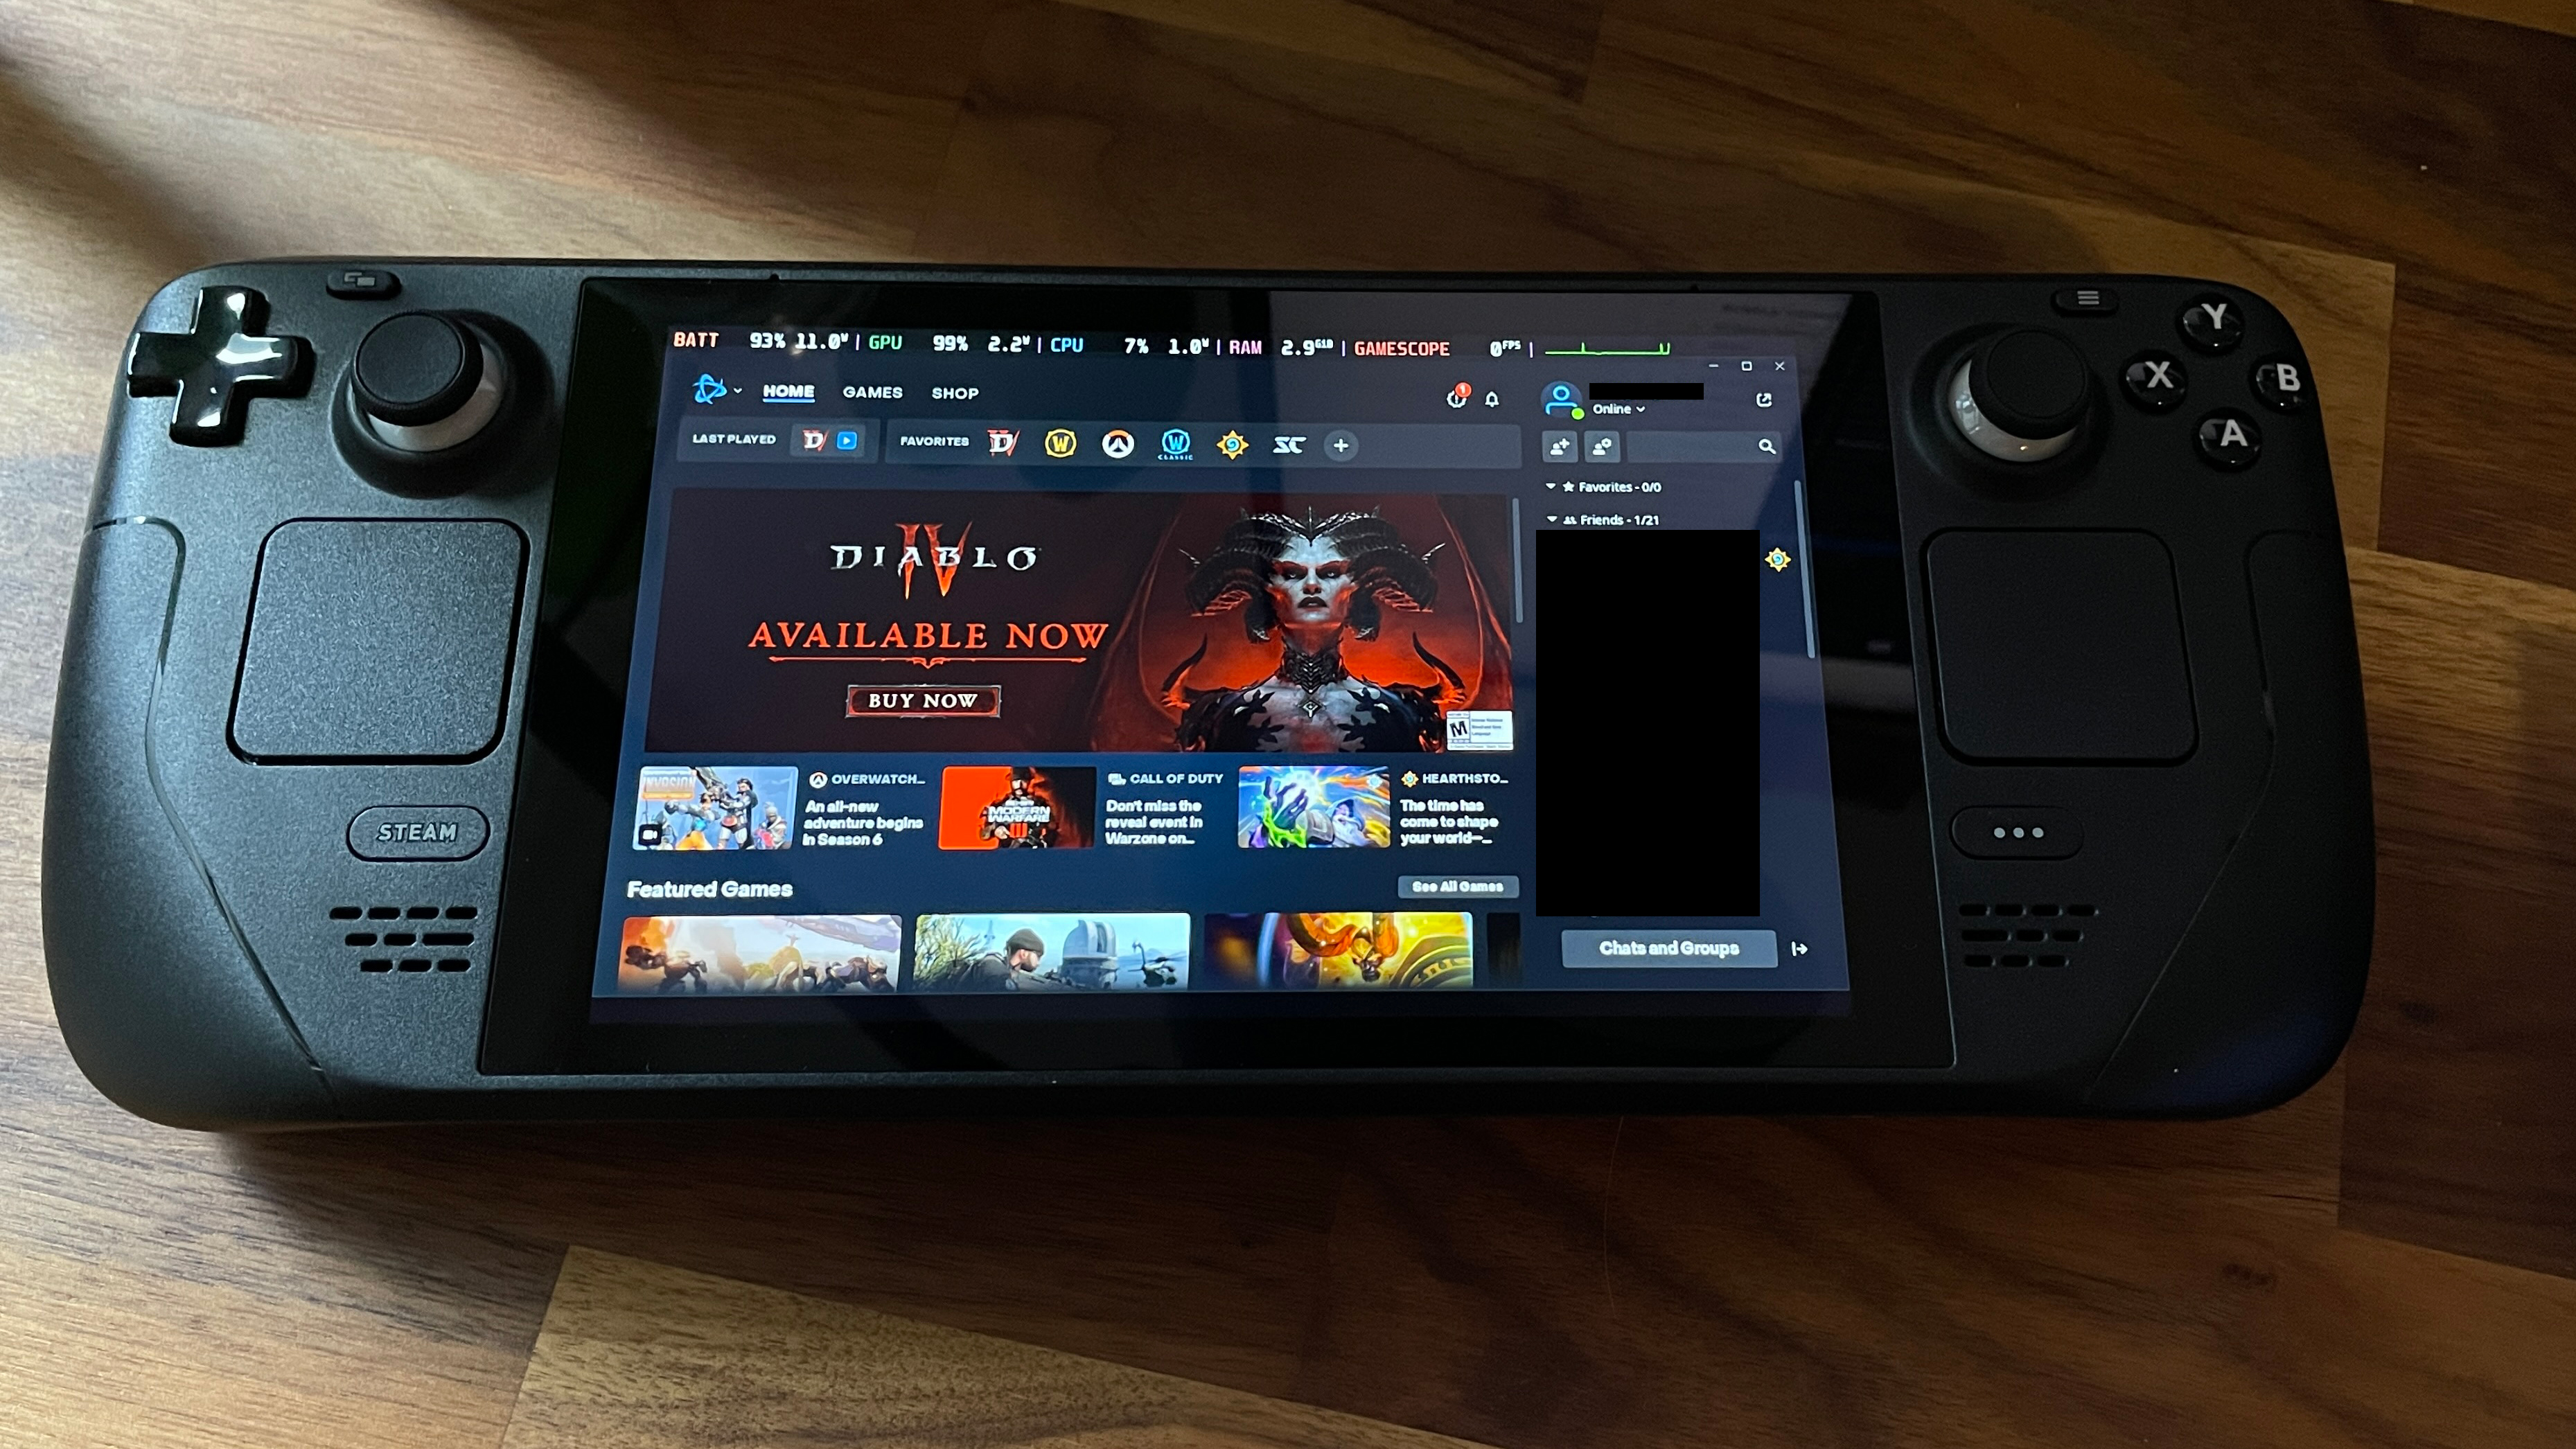 סיפון קיטור בצבע שחור, עם משחק וידאו של דיאבלו 4 על המסך